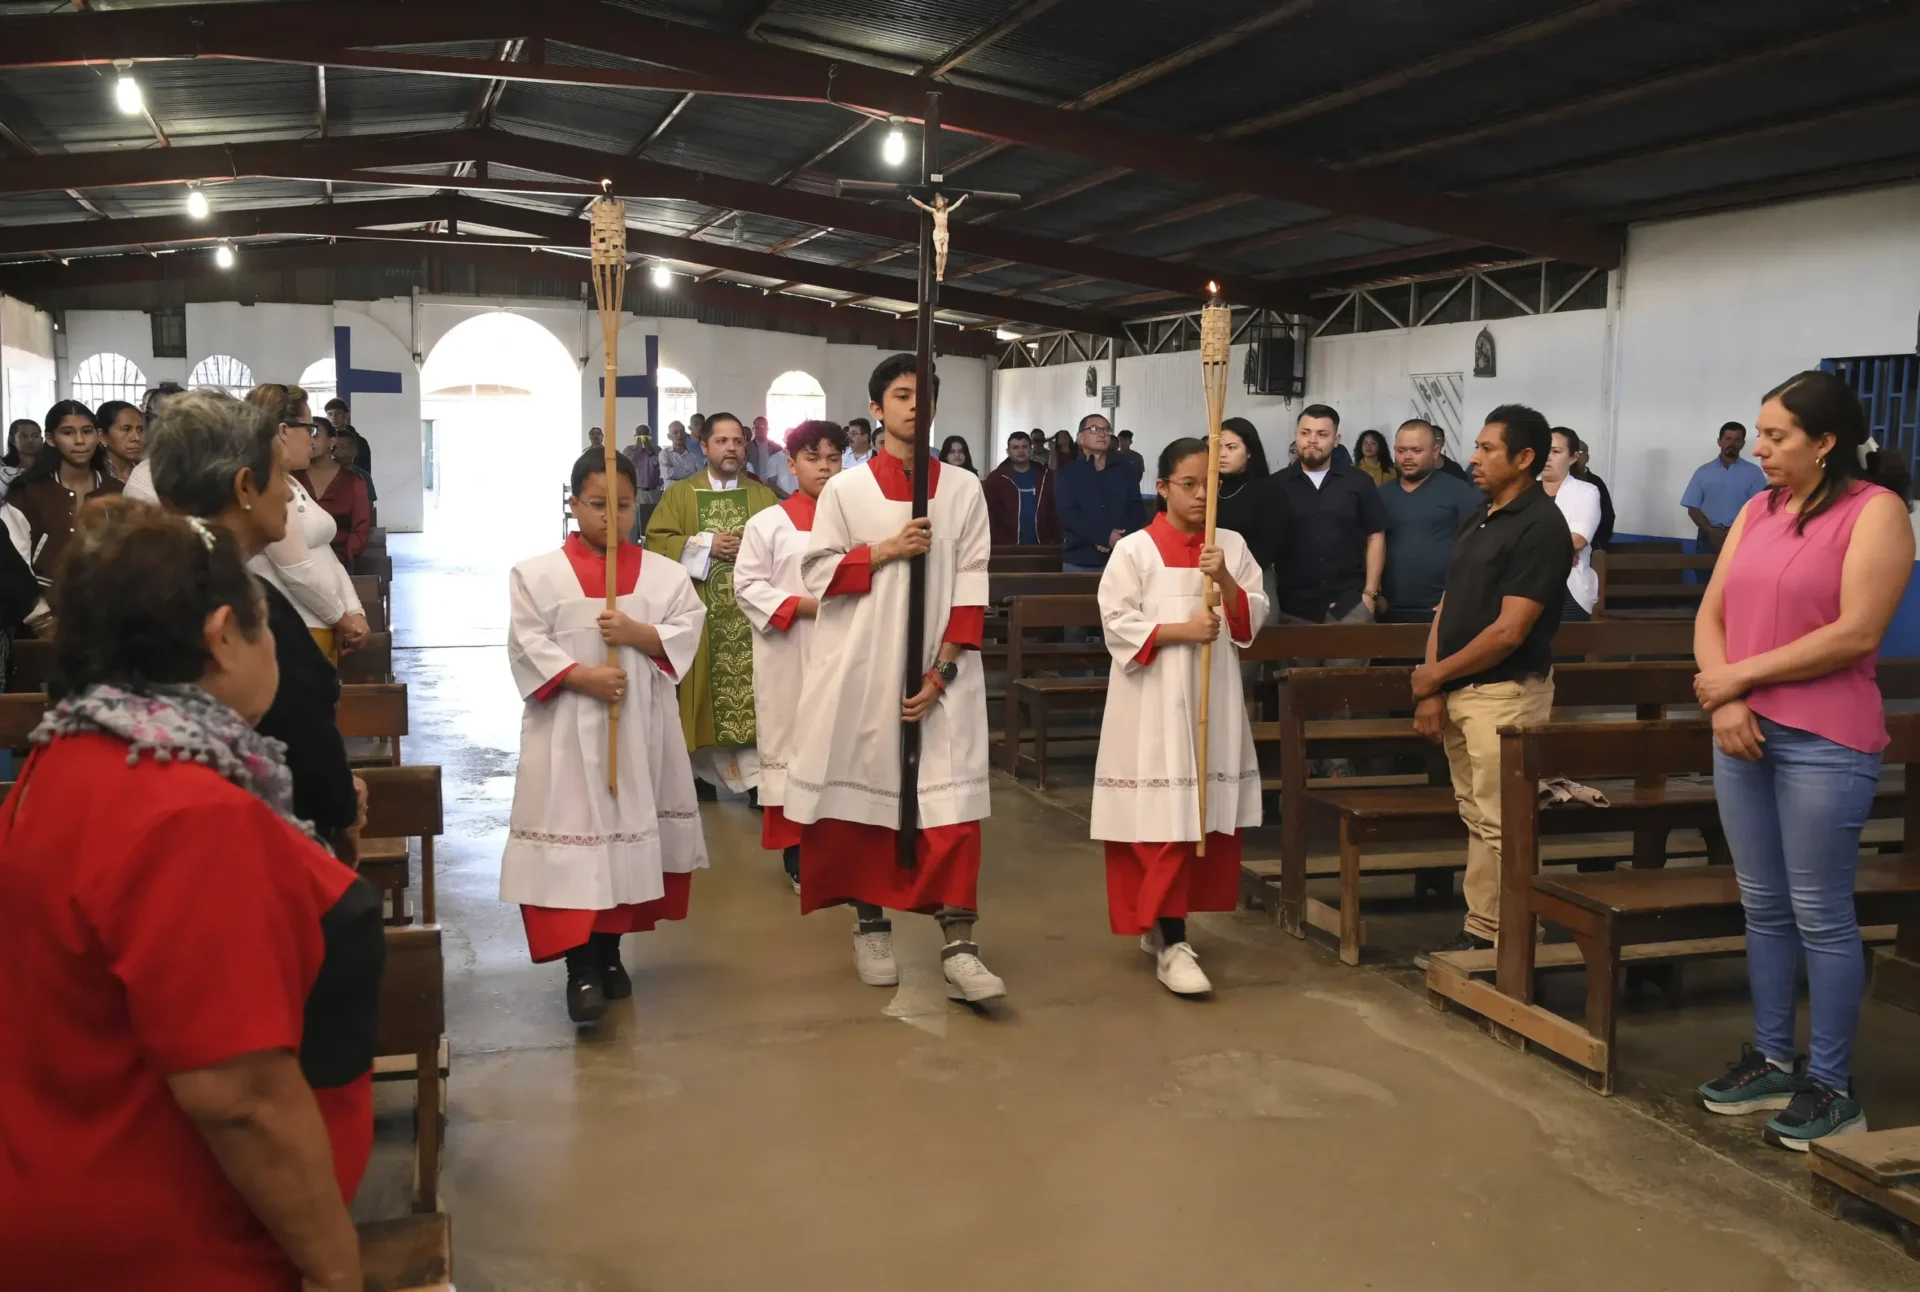 El miedo y la ansiedad acompañan a los líderes religiosos nicaragüenses al exilio